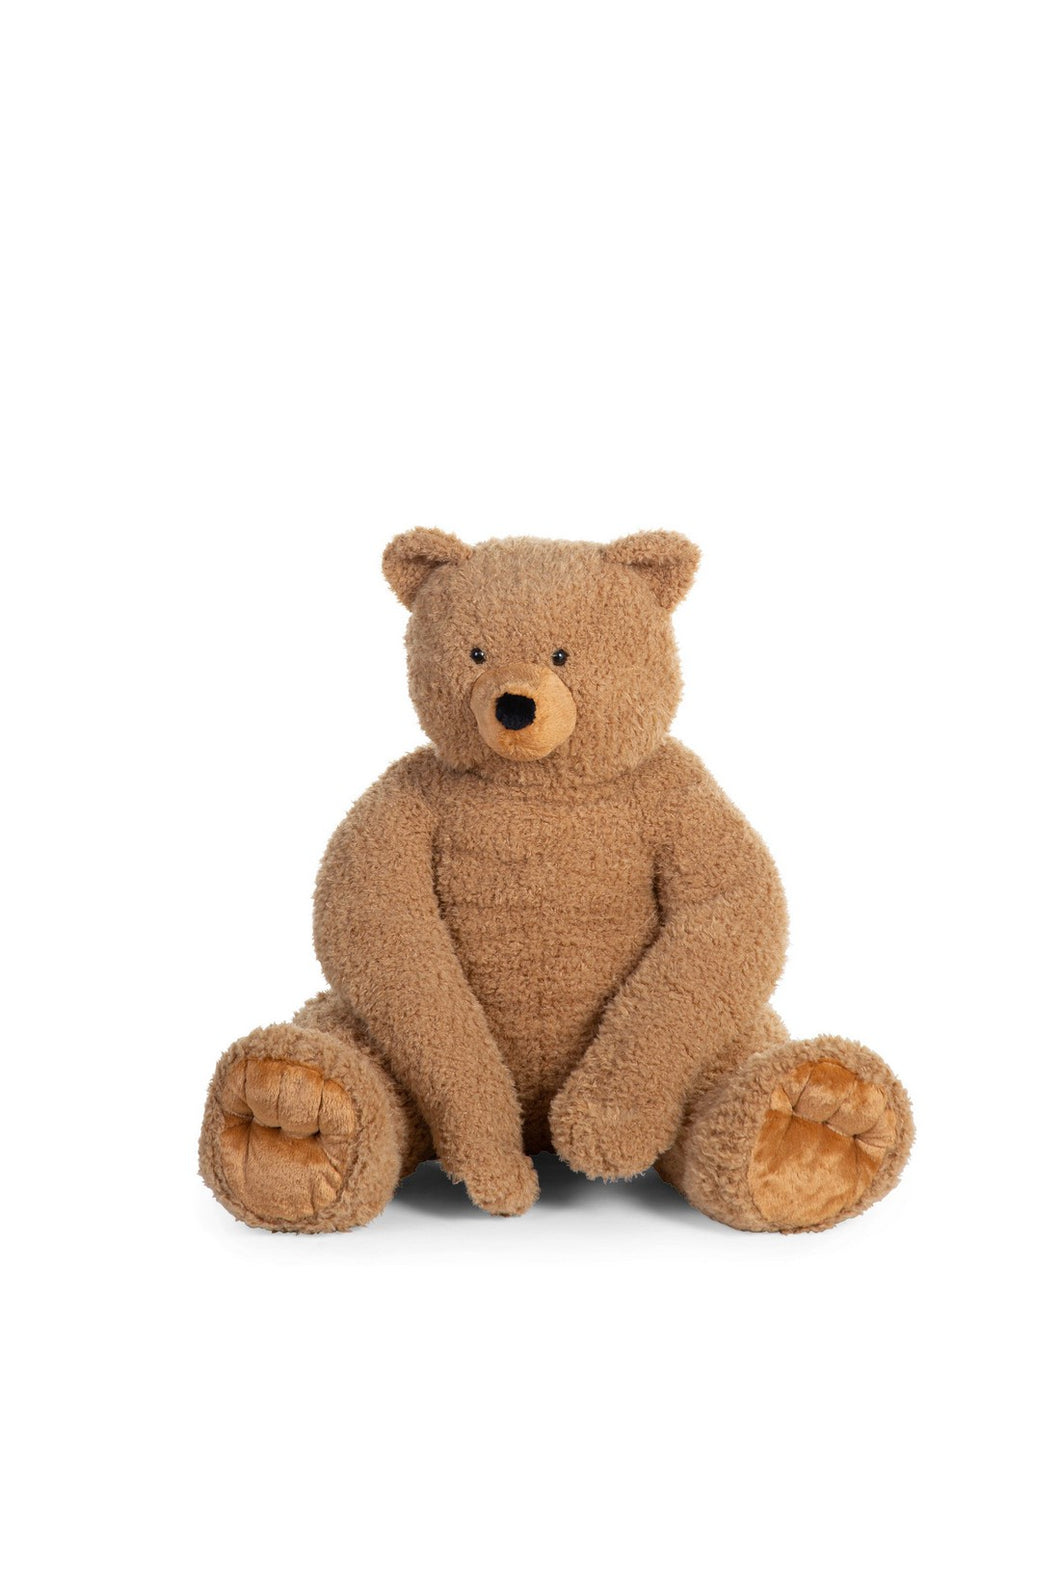 Childhome Seated Teddy Bear Stuffed Animal - 60 x 60 x 76 cm - Teddy